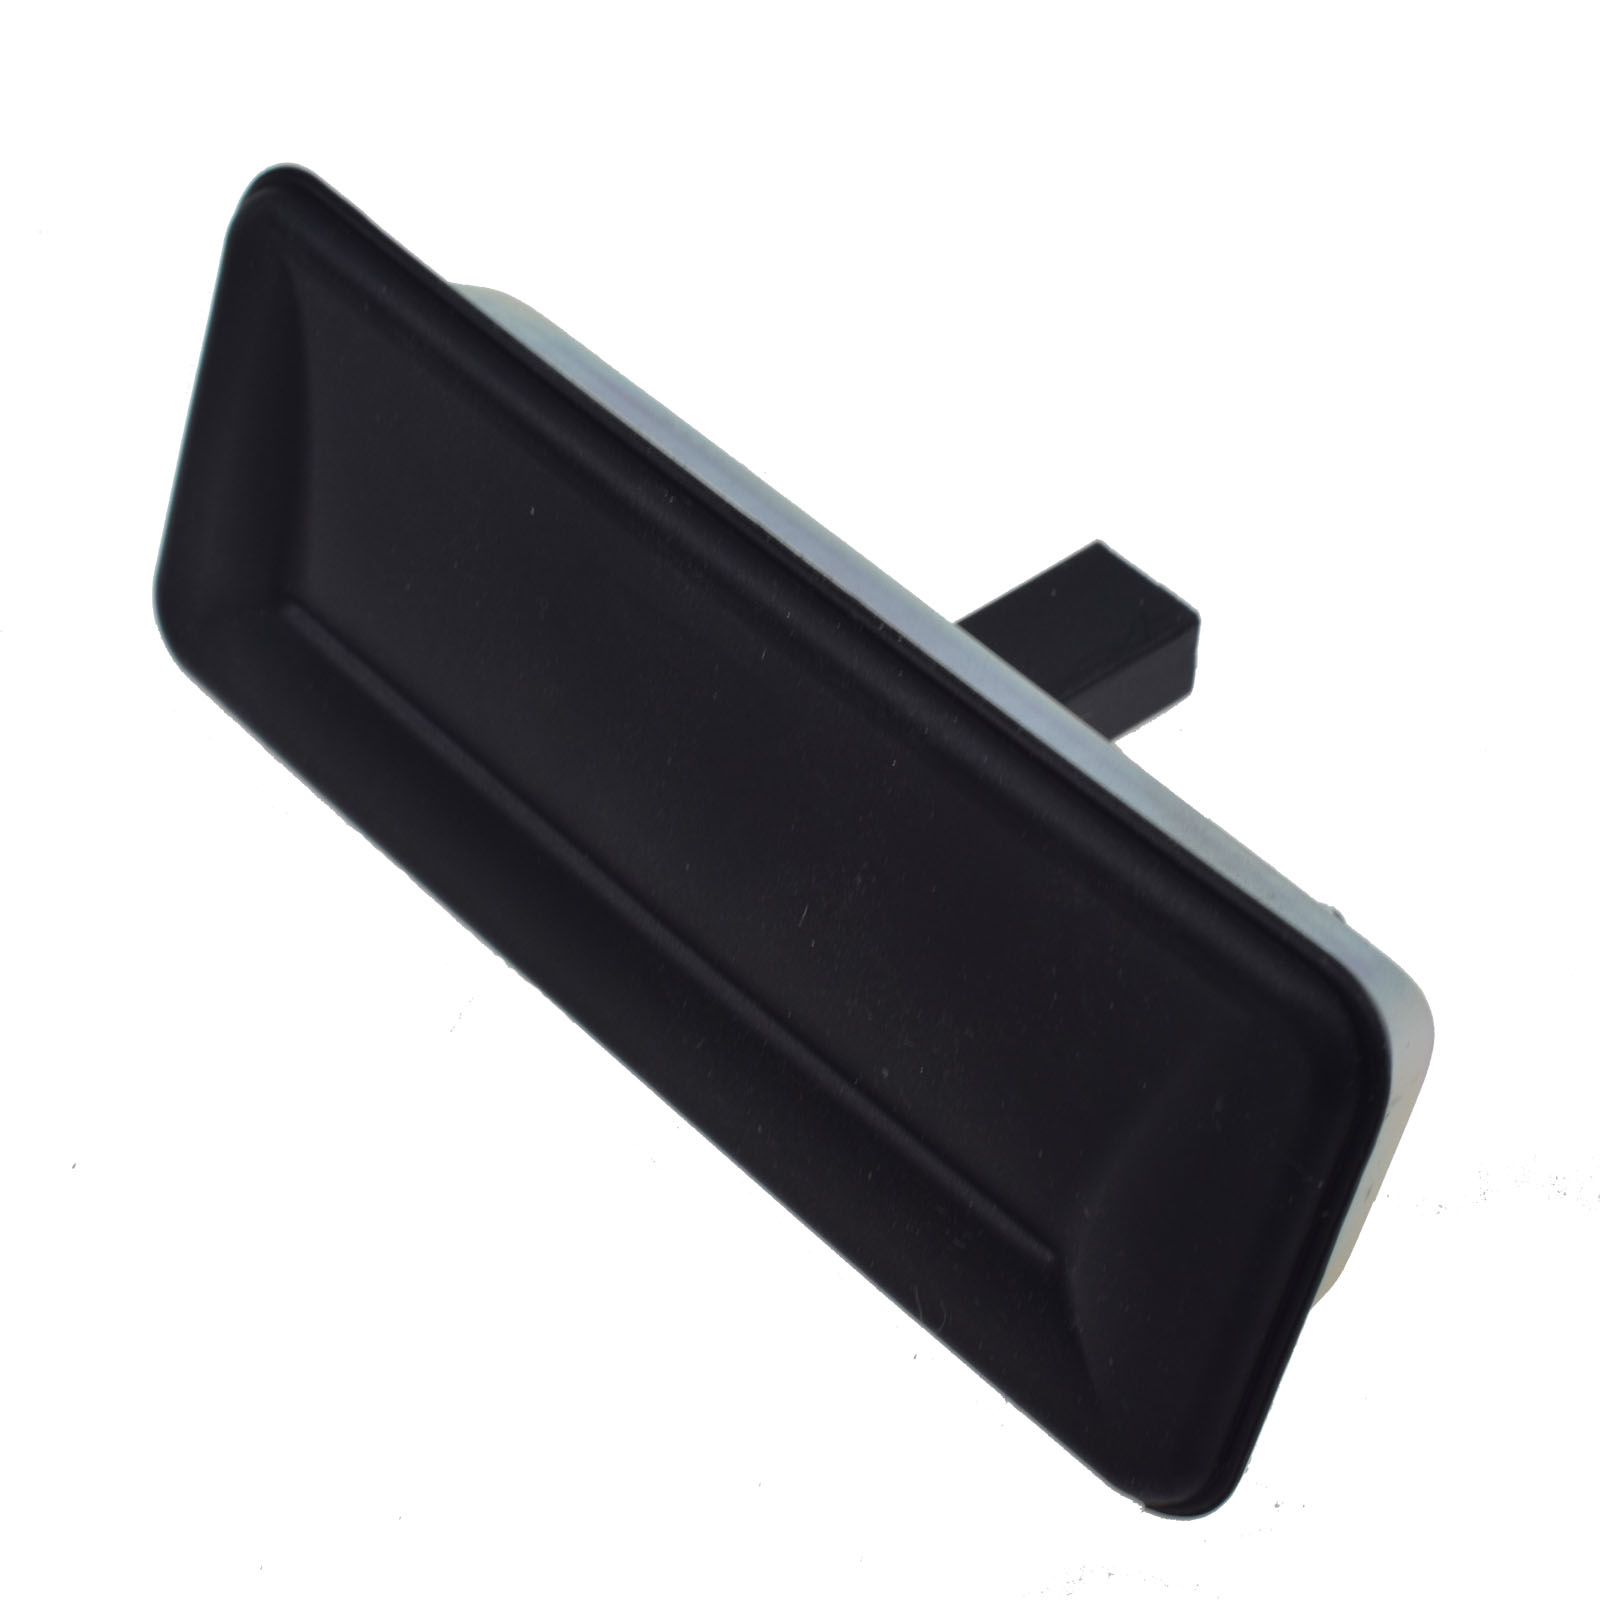 Rear Trunk Lock Release Handle Switch for Skoda Octavia / VW XL1 Rear  1Z0827574C 1Z0 827 574C 2004-2015